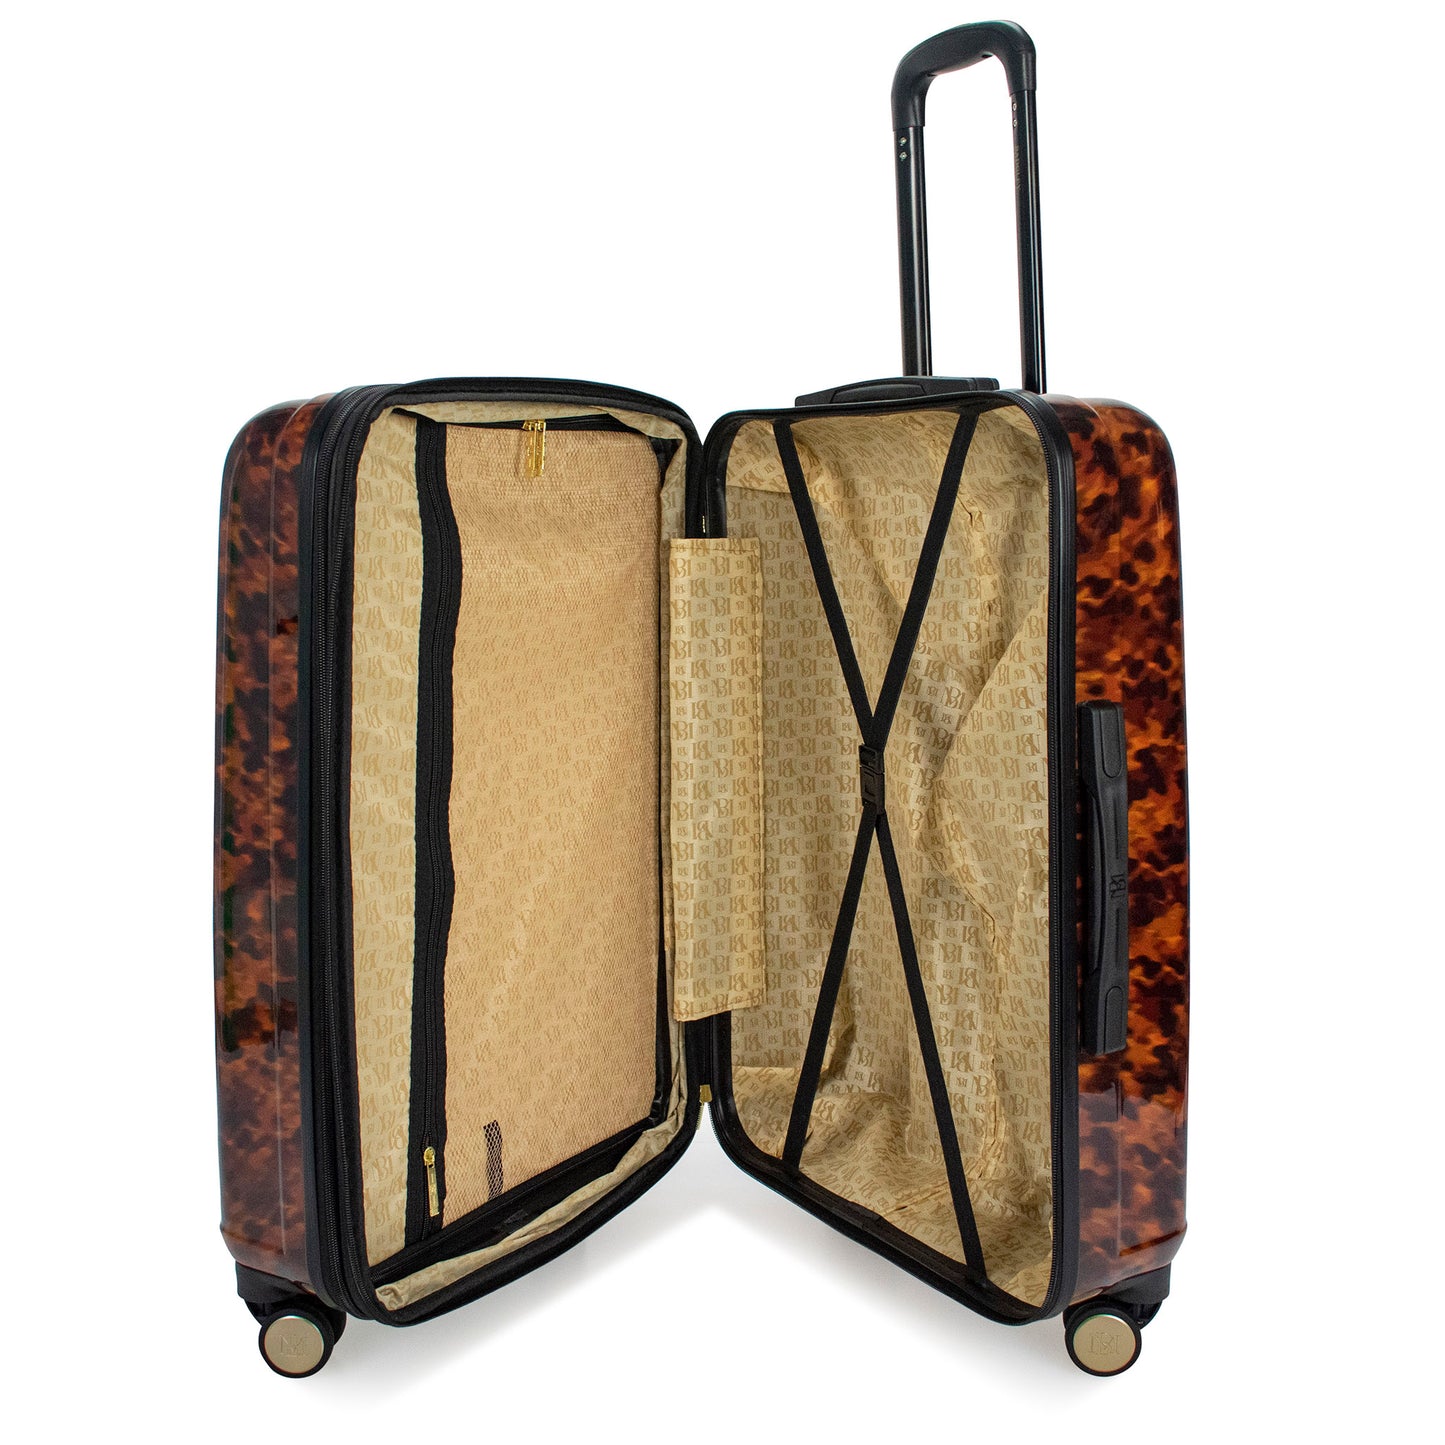 Essence Expandable Luggage Set - Tortoise